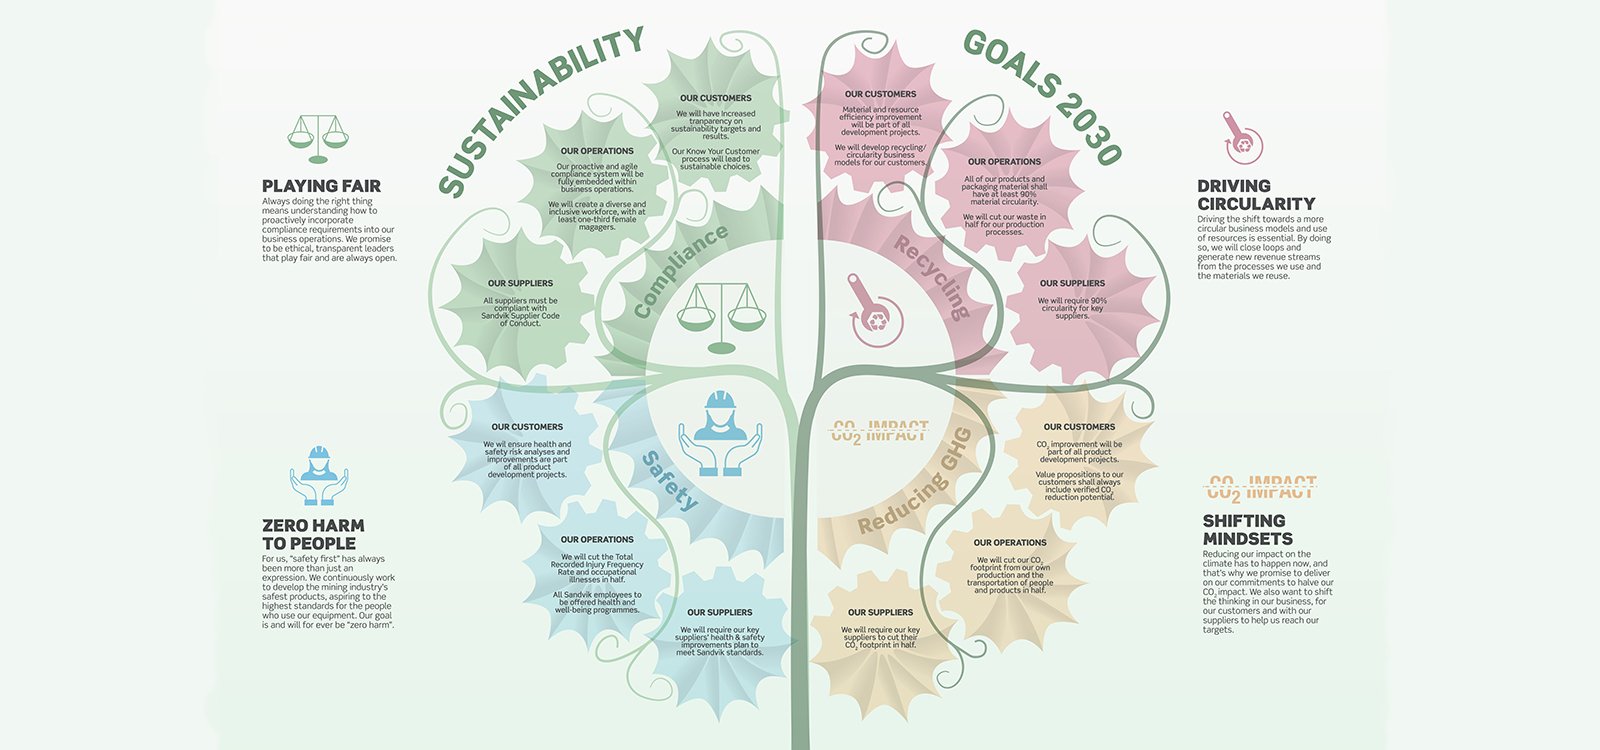 <p>As quatro metas de sustentabilidade da Sandvik Mining and Rock Technology para 2030 – segurança, redução de gases de efeito estufa, circularidade e <em>compliance</em> – terão a mesma relevância que as metas tradicionais de negócios.</p>
